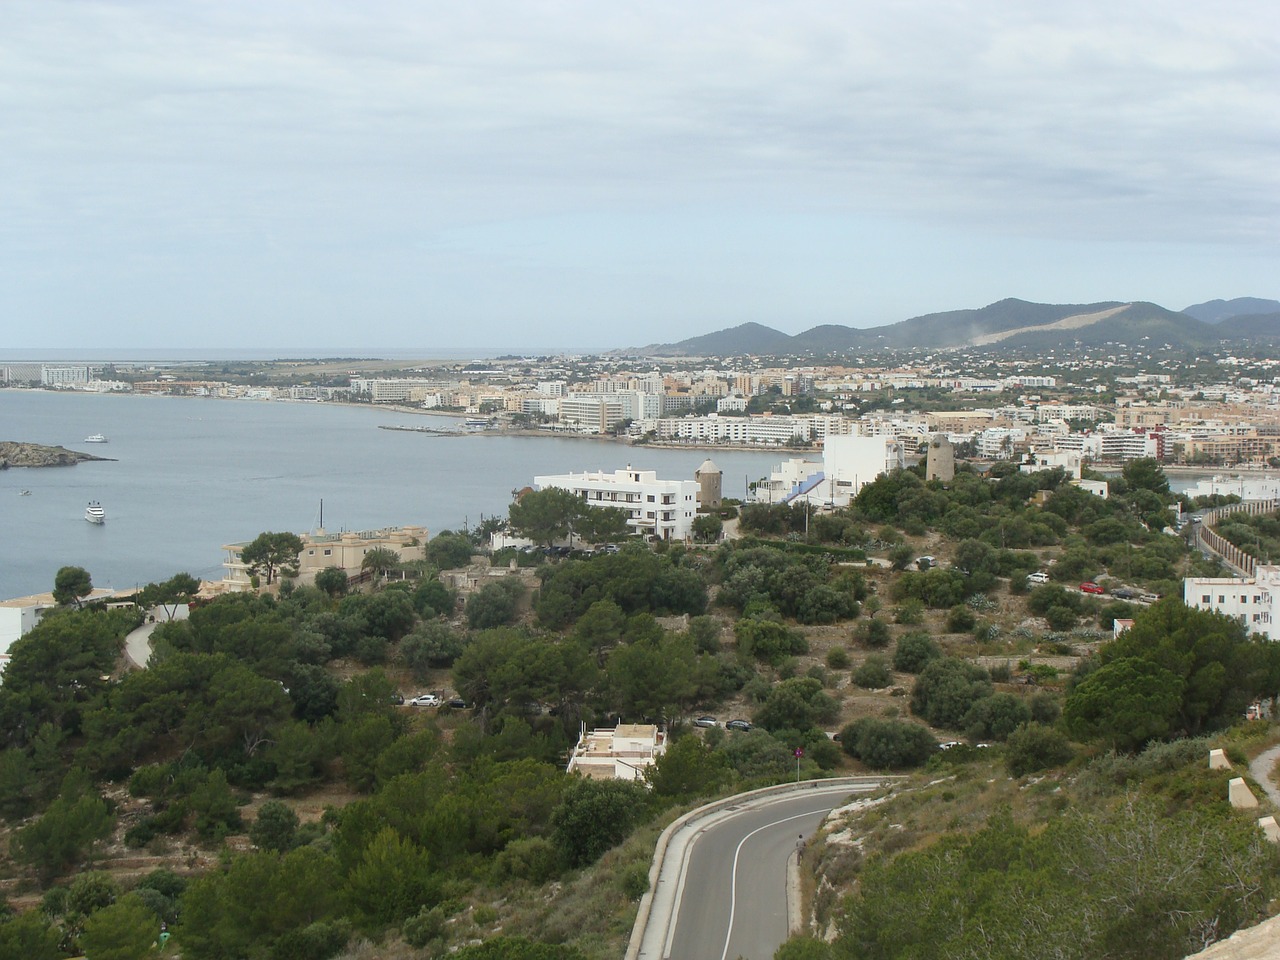 Ibiza,port,on the island of ibiza,spain,city - free image from needpix.com